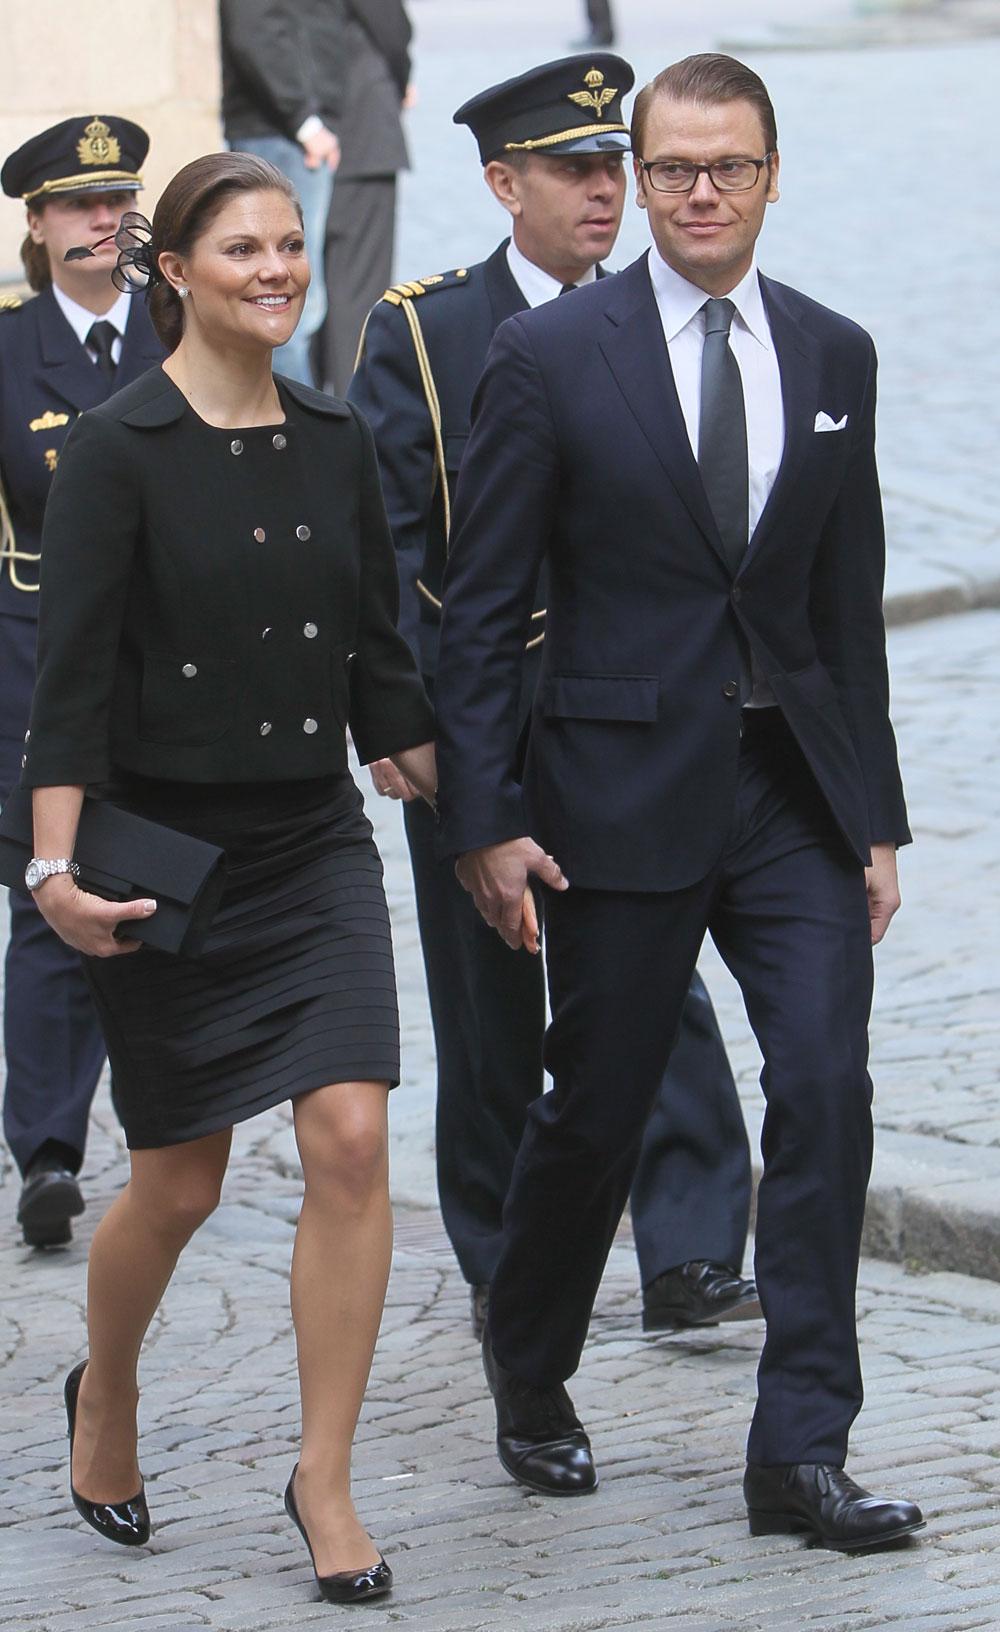 Kronprinsessan Victoria och prins Daniel Westling Bernadotte vid riksmötets öppnande.